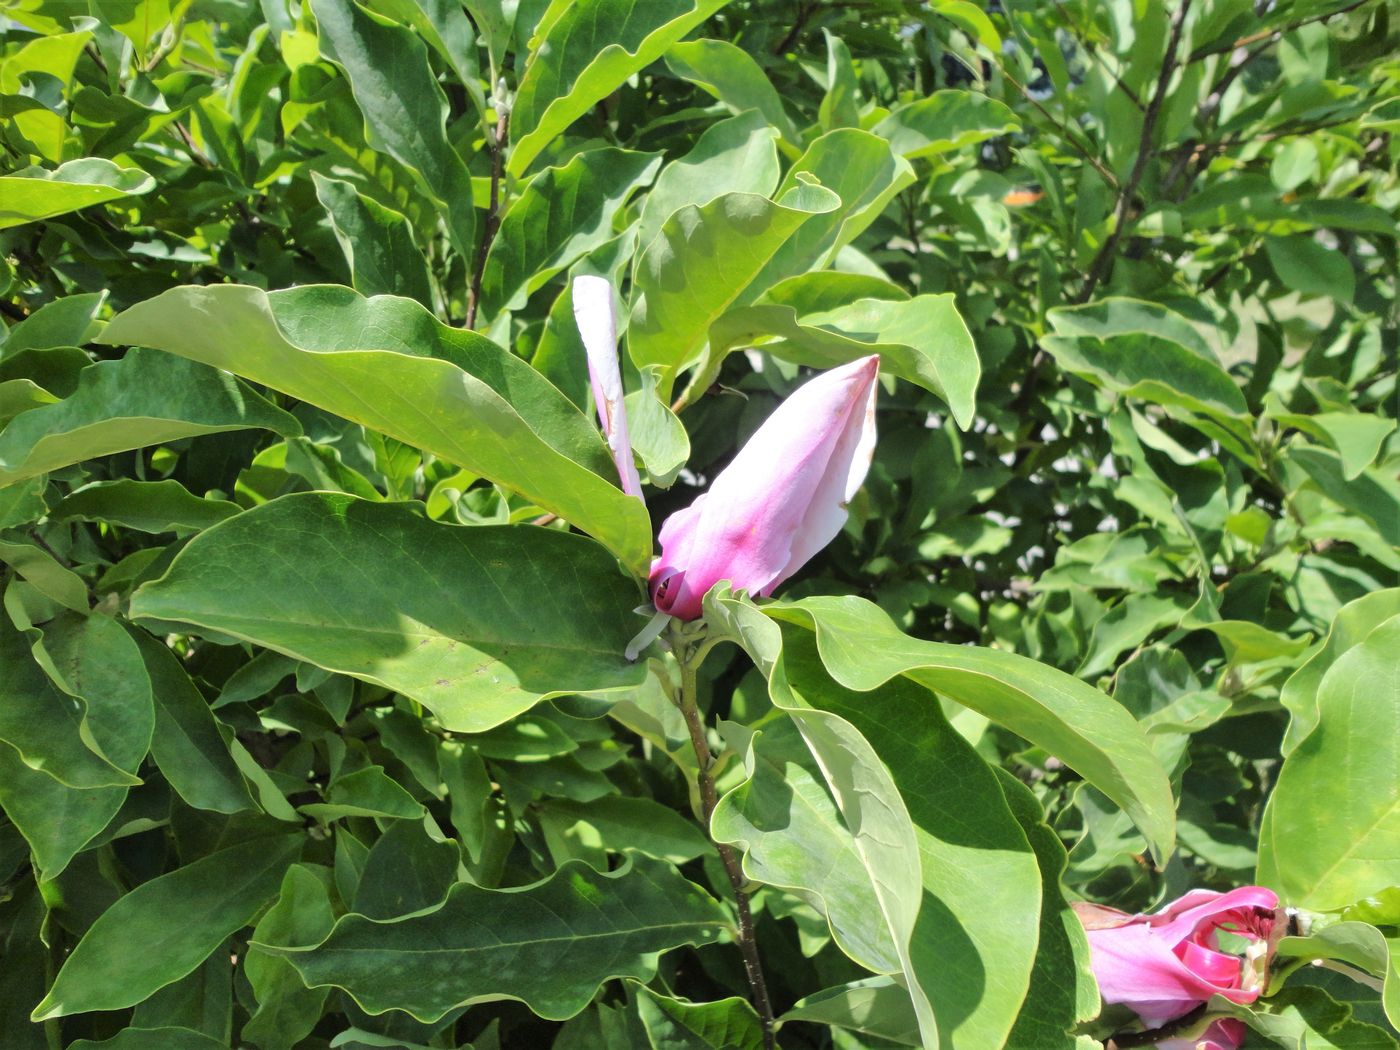 Image of genus Magnolia specimen.